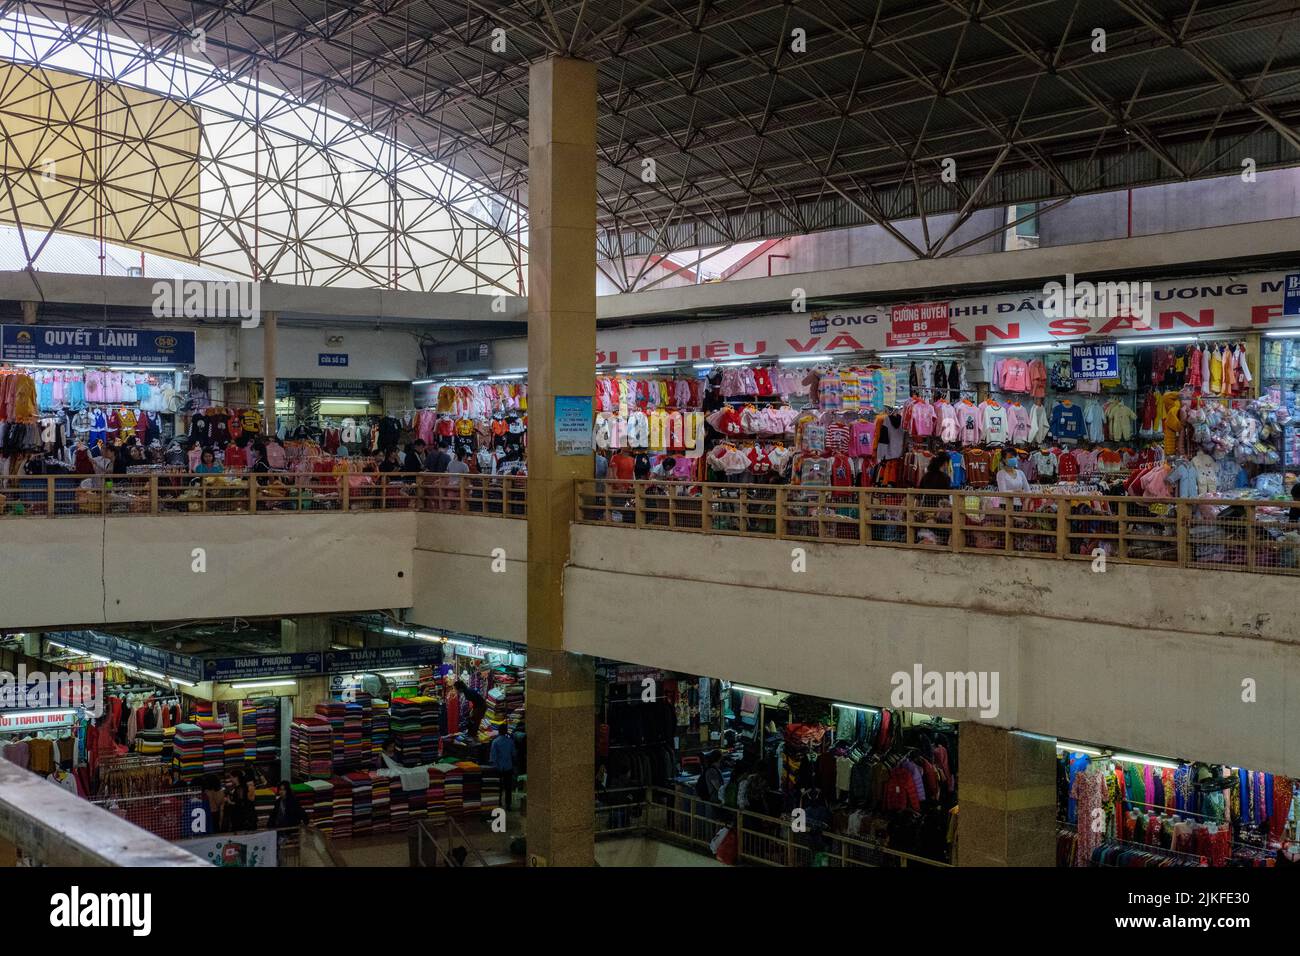 HANOI, VIETNAM - JANUARY 5, 2020: Impressions from inside Dong Xuan market in Hanoi, Vietnam on January 5, 2020. Stock Photo